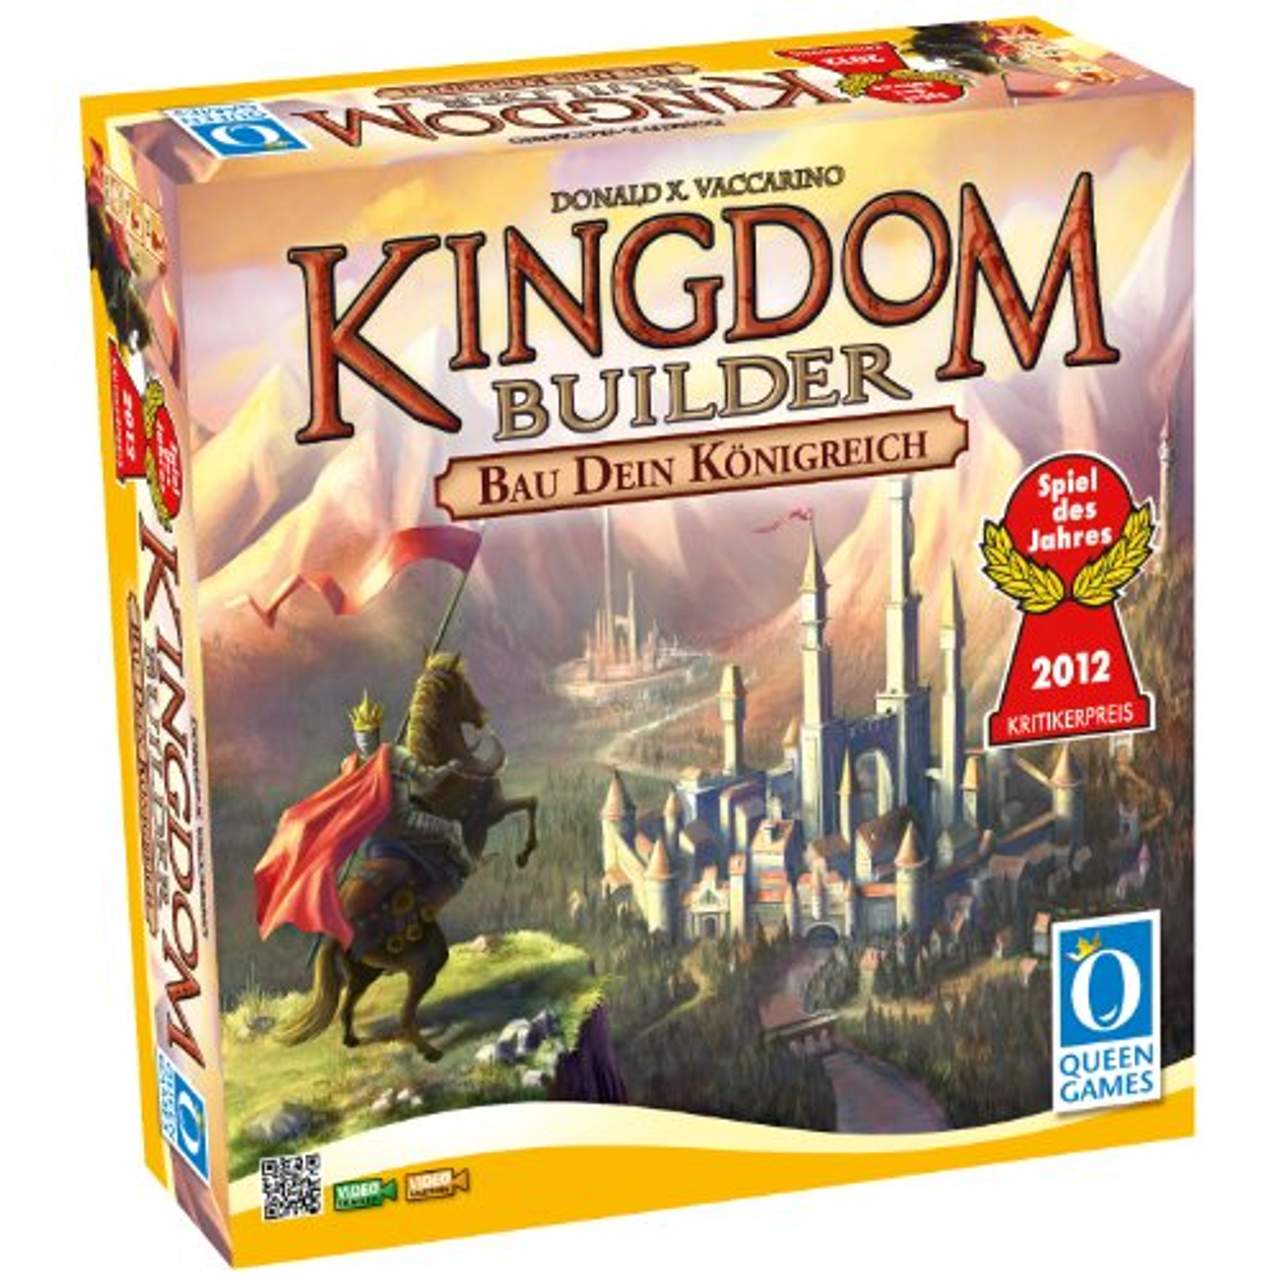 Kingdom Builder, Spiel des Jahres 2012